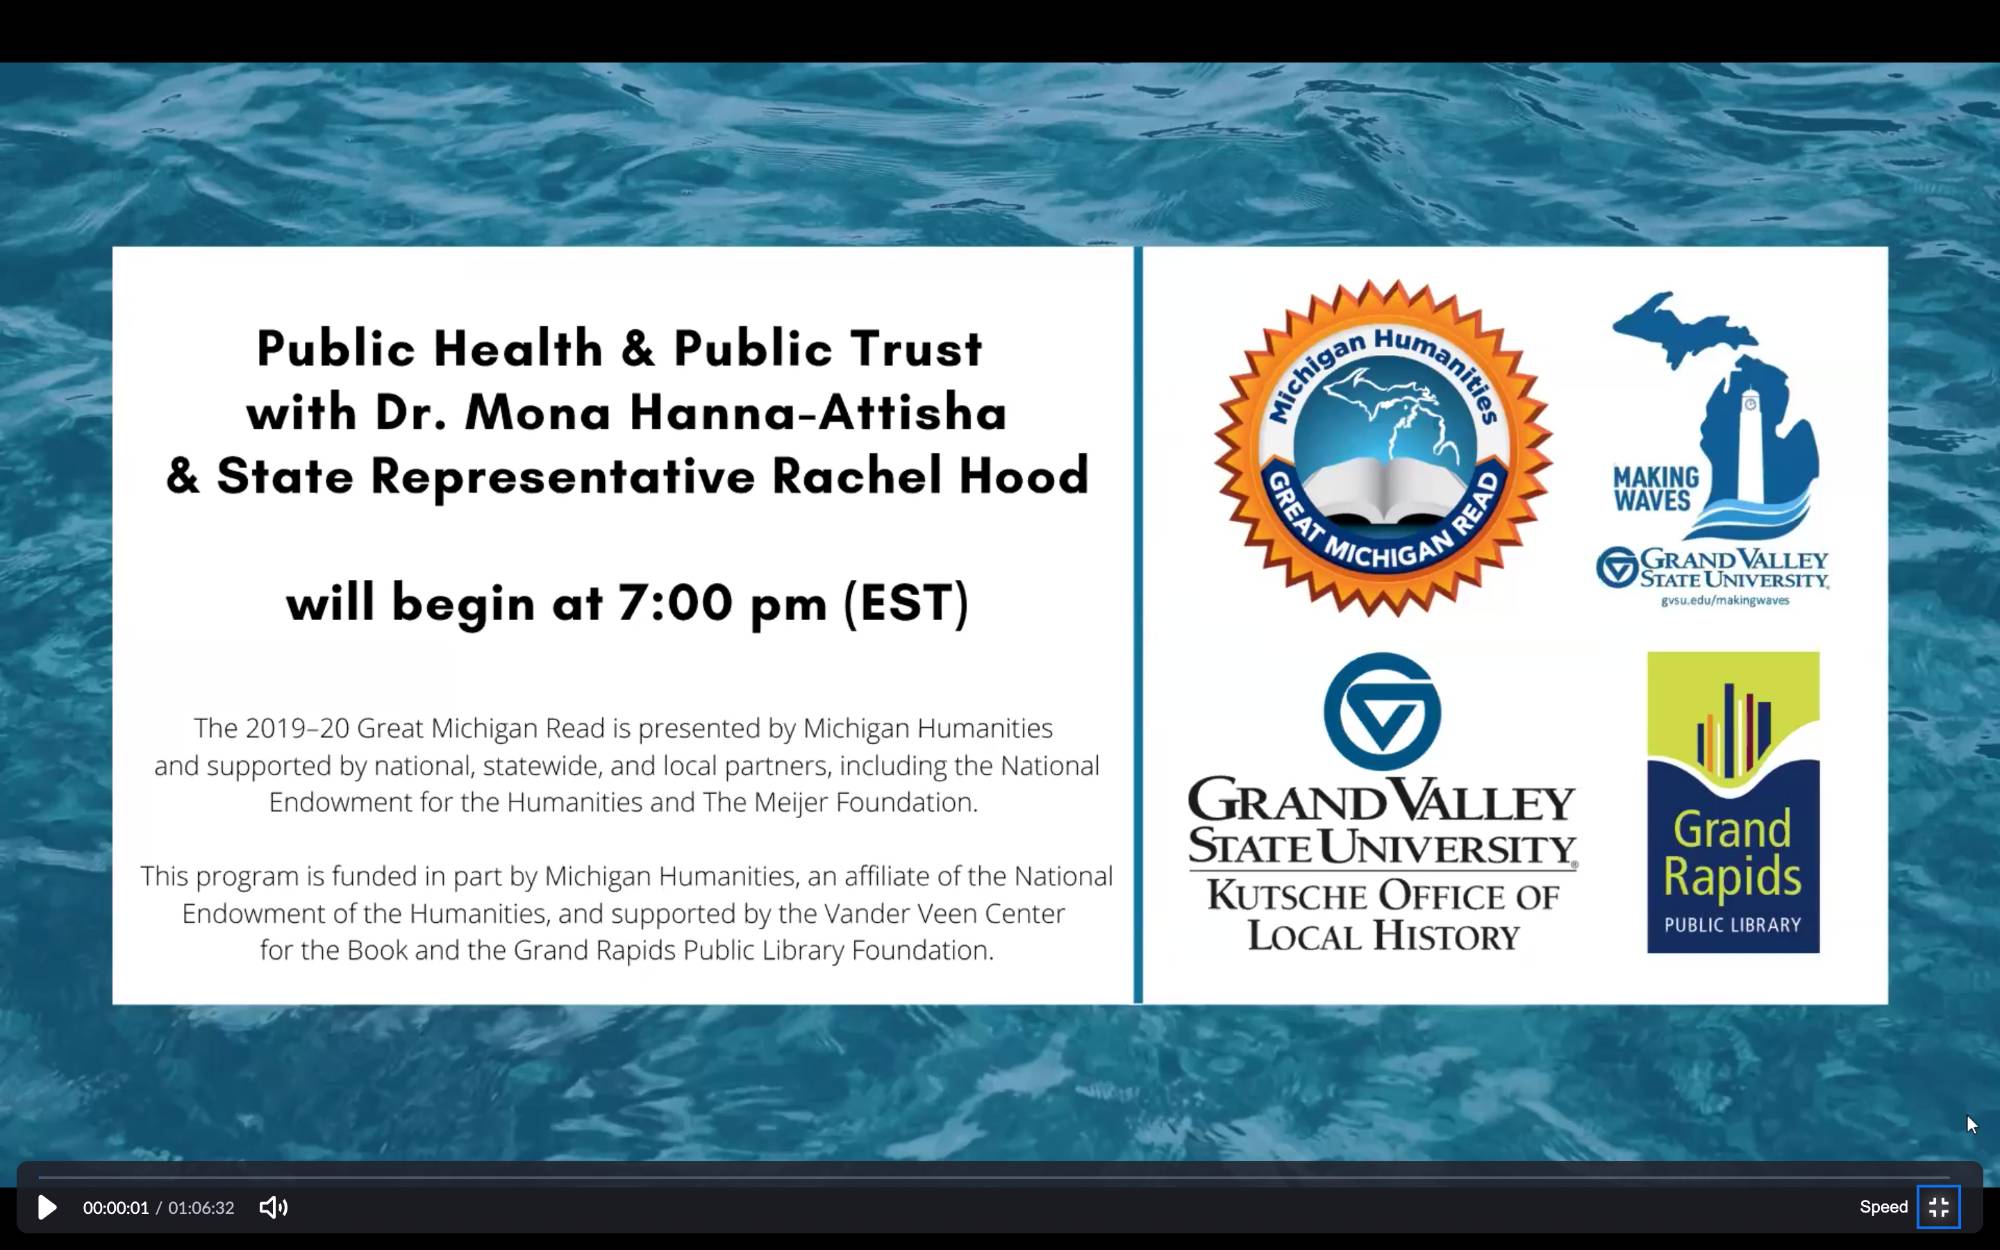 Public Health & Public Trust